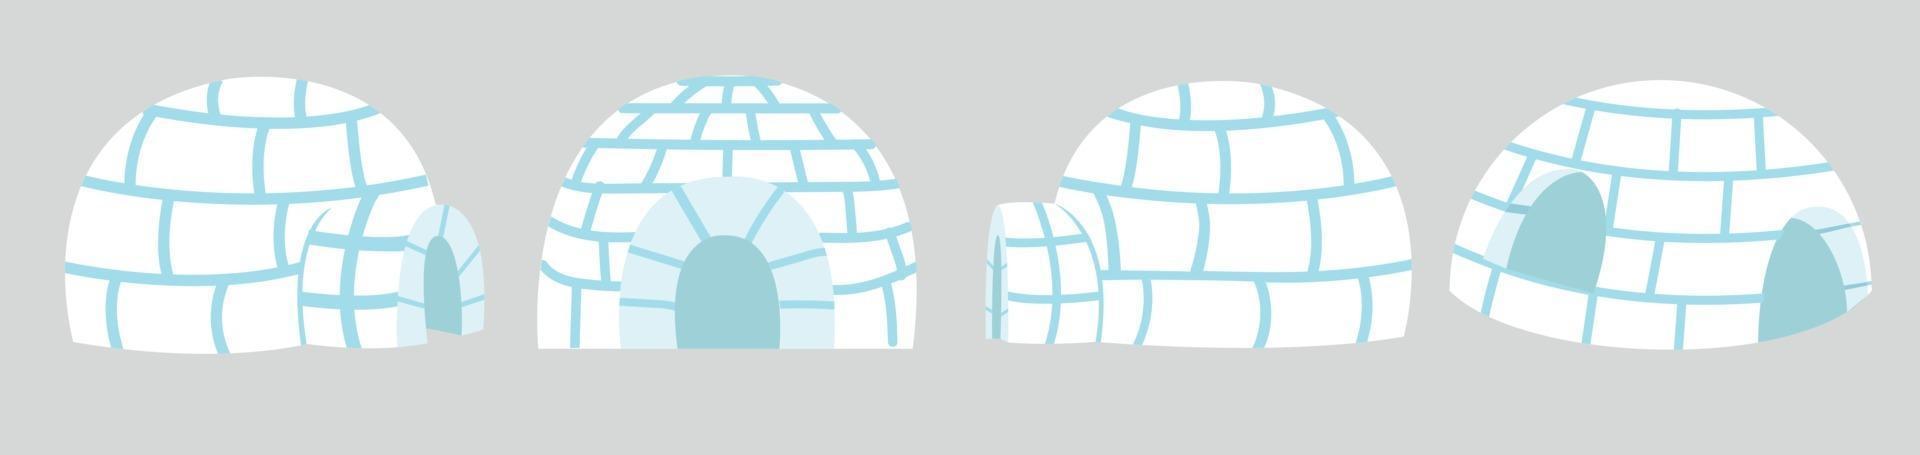 Casa de gelo de iglus em conjunto de design plano vetor